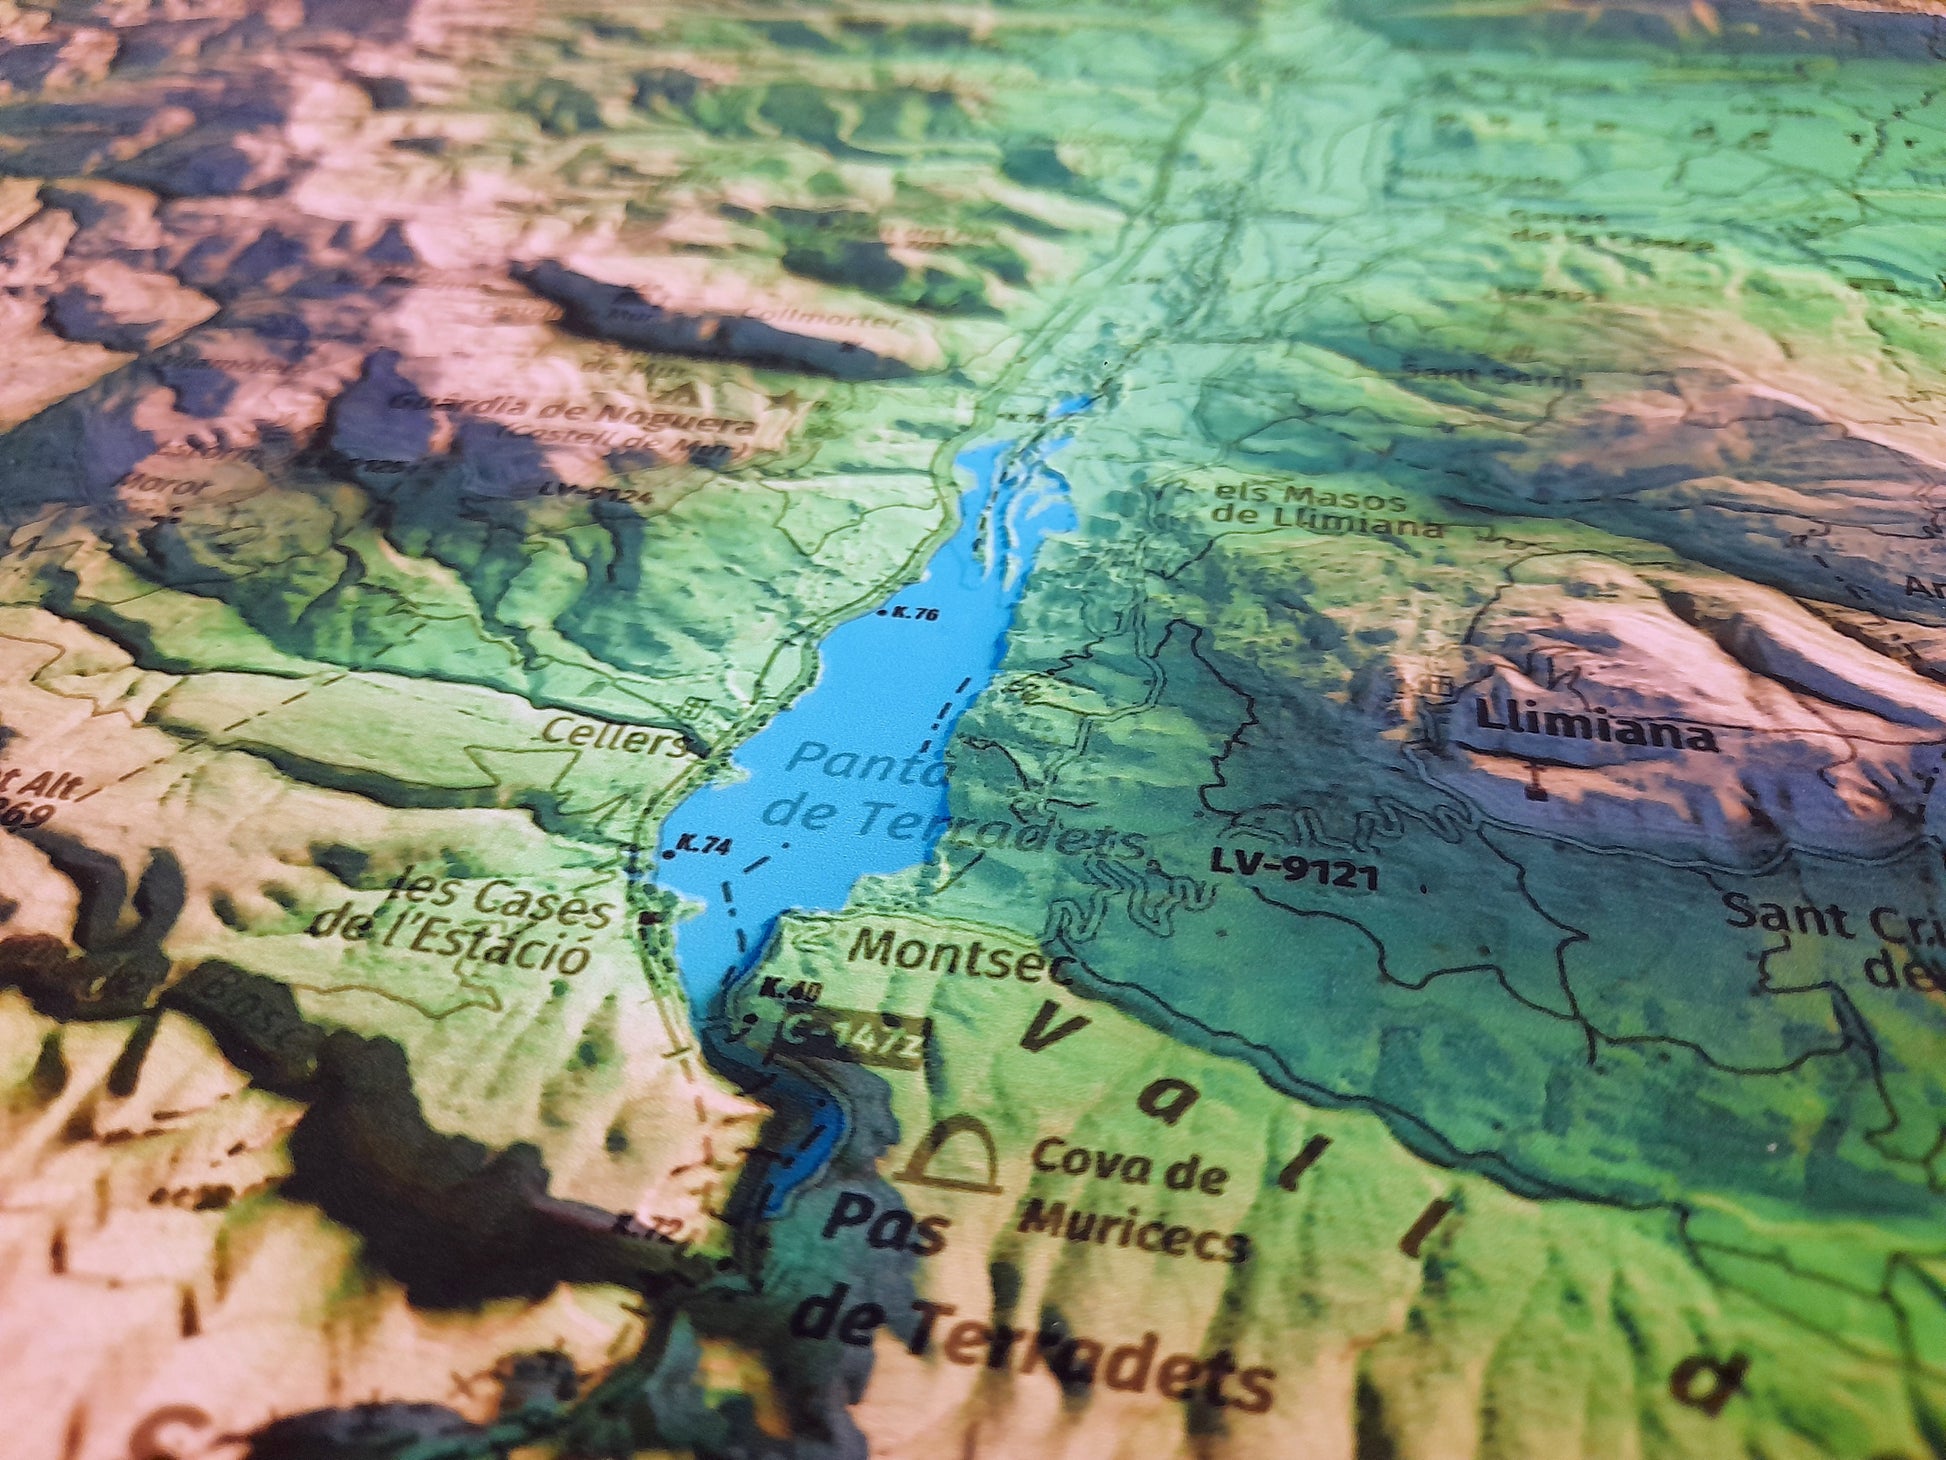 Detall de Terradets. Mapa imprès que inclou tota la Serra del Montsec, que inclou Montsec de l'Estall, Montsec d'Ares i Montsec de Rúbies (o de Meià). El mapa es presenta en un estil minimalista i elegant, amb un detallat modelatge d'elevacions terrestres mapa imprès que abasta tota la Serra del Montsec, que inclou Montsec de l'Estall, Montsec d'Ares i Montsec de Rúbies (o de Meià). El mapa es presenta en un estil minimalista i elegant, amb un modelat detallat d'elevacions terrestres.